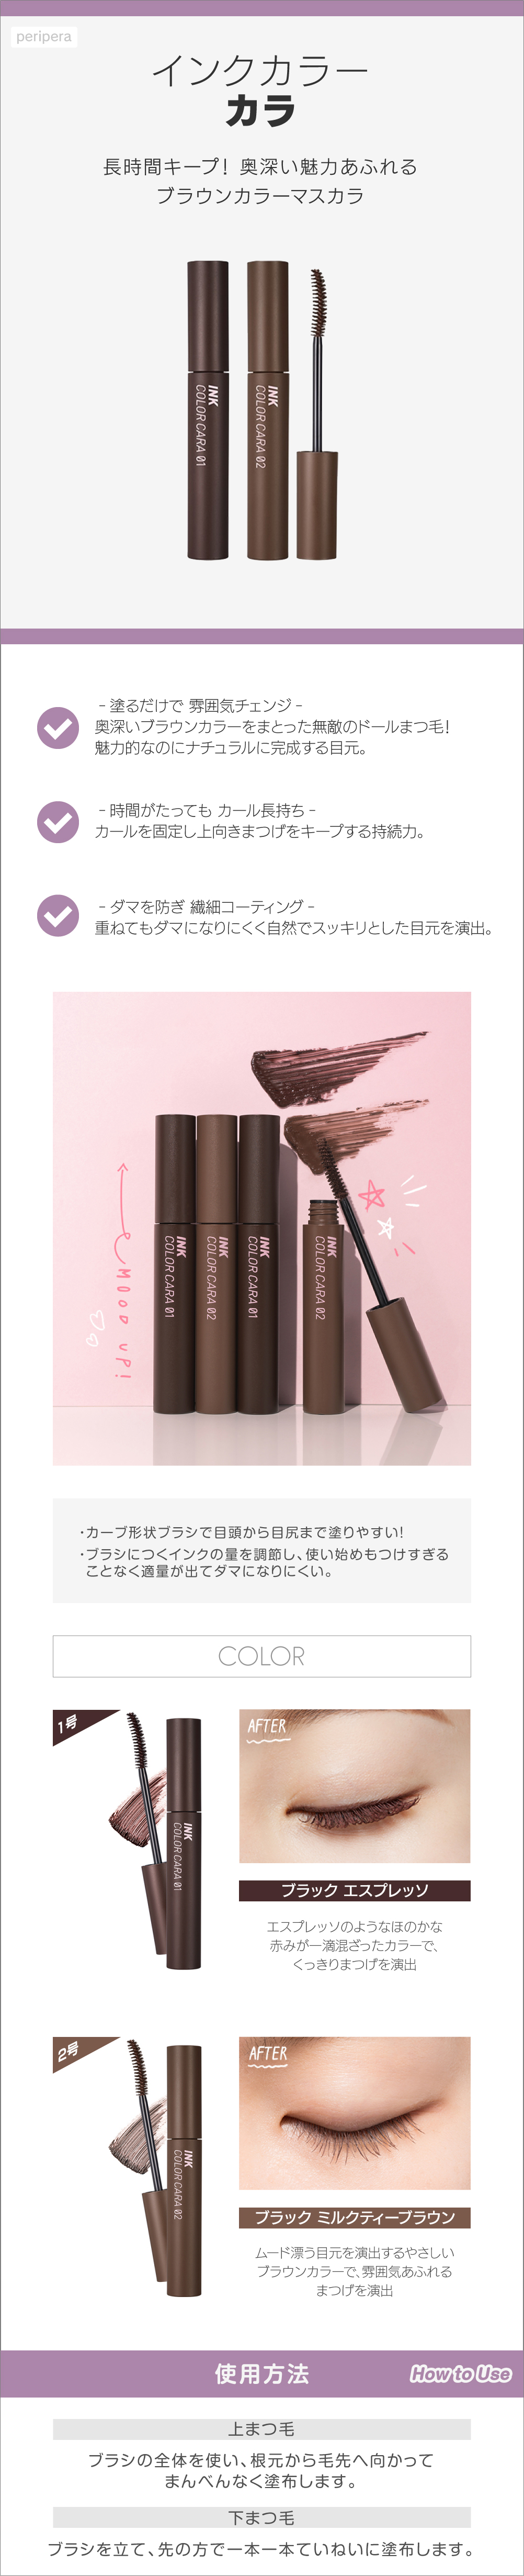 インクカラーカラ skin holic 日本公式 オンラインショップ